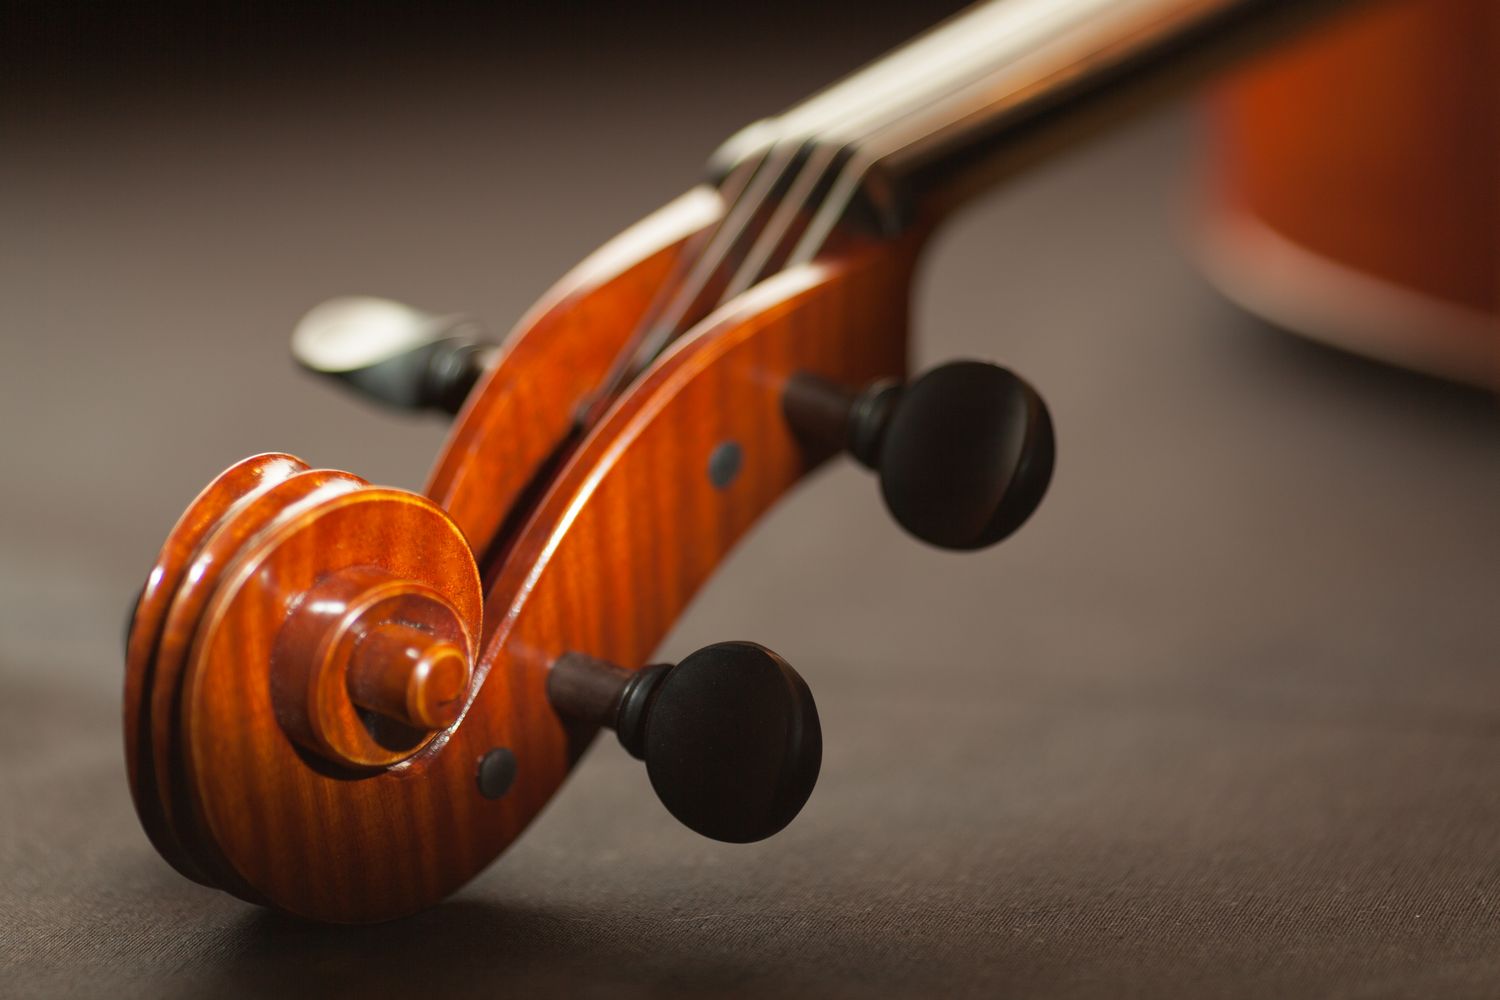 Nauka gry na skrzypcach